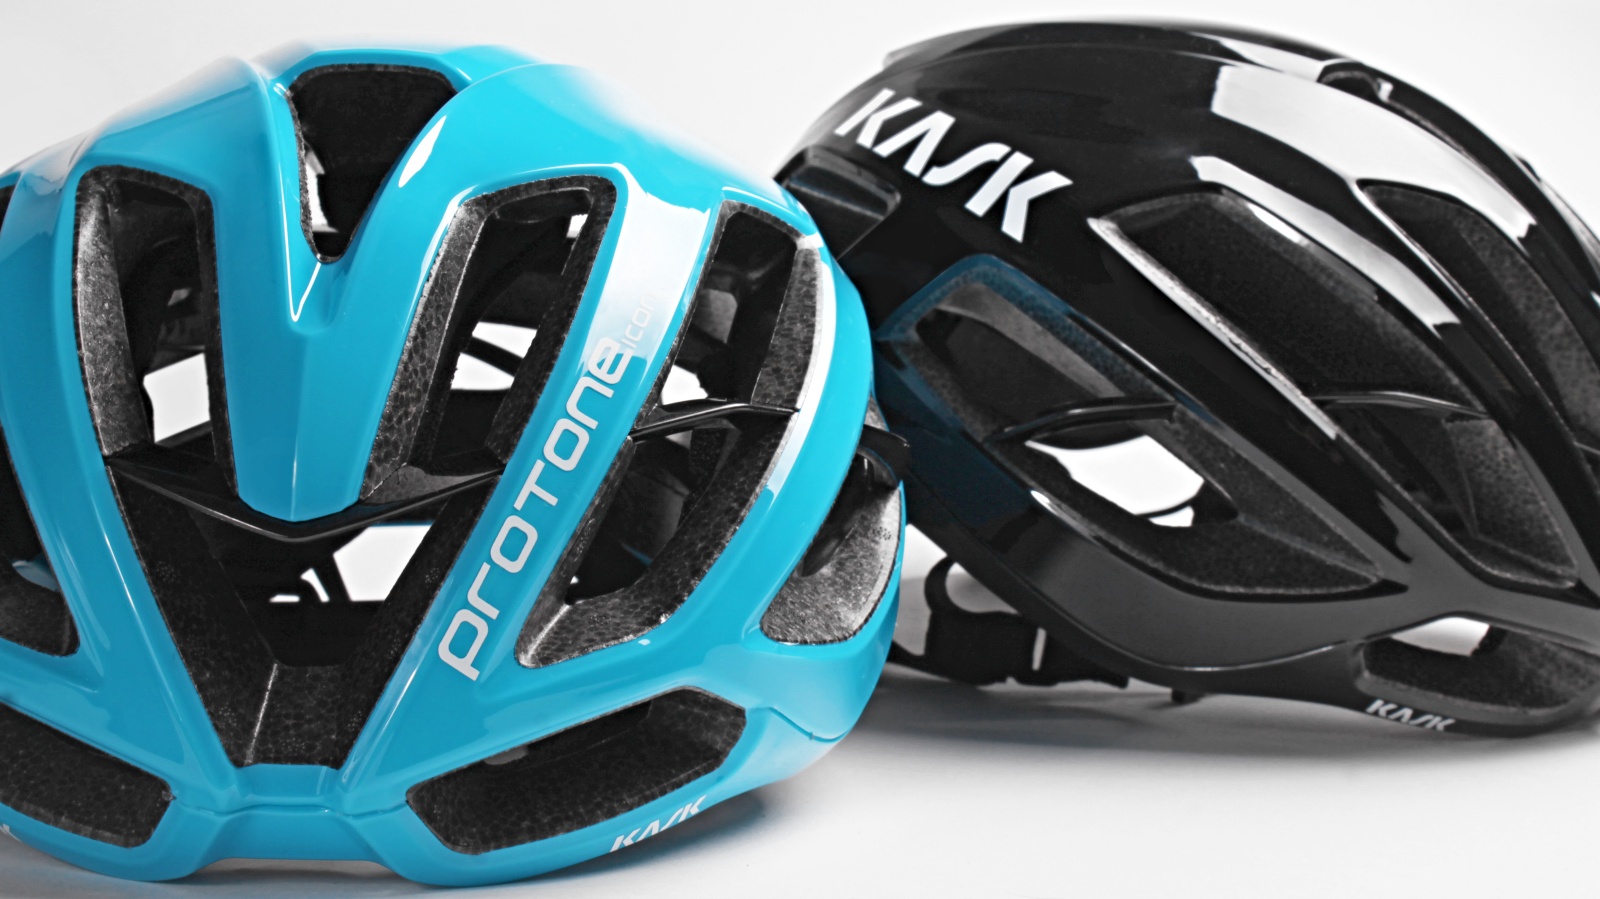 https://bikerumor.com/wp-content/uploads/2022/04/kask-protone-icon-helmet-2.jpg